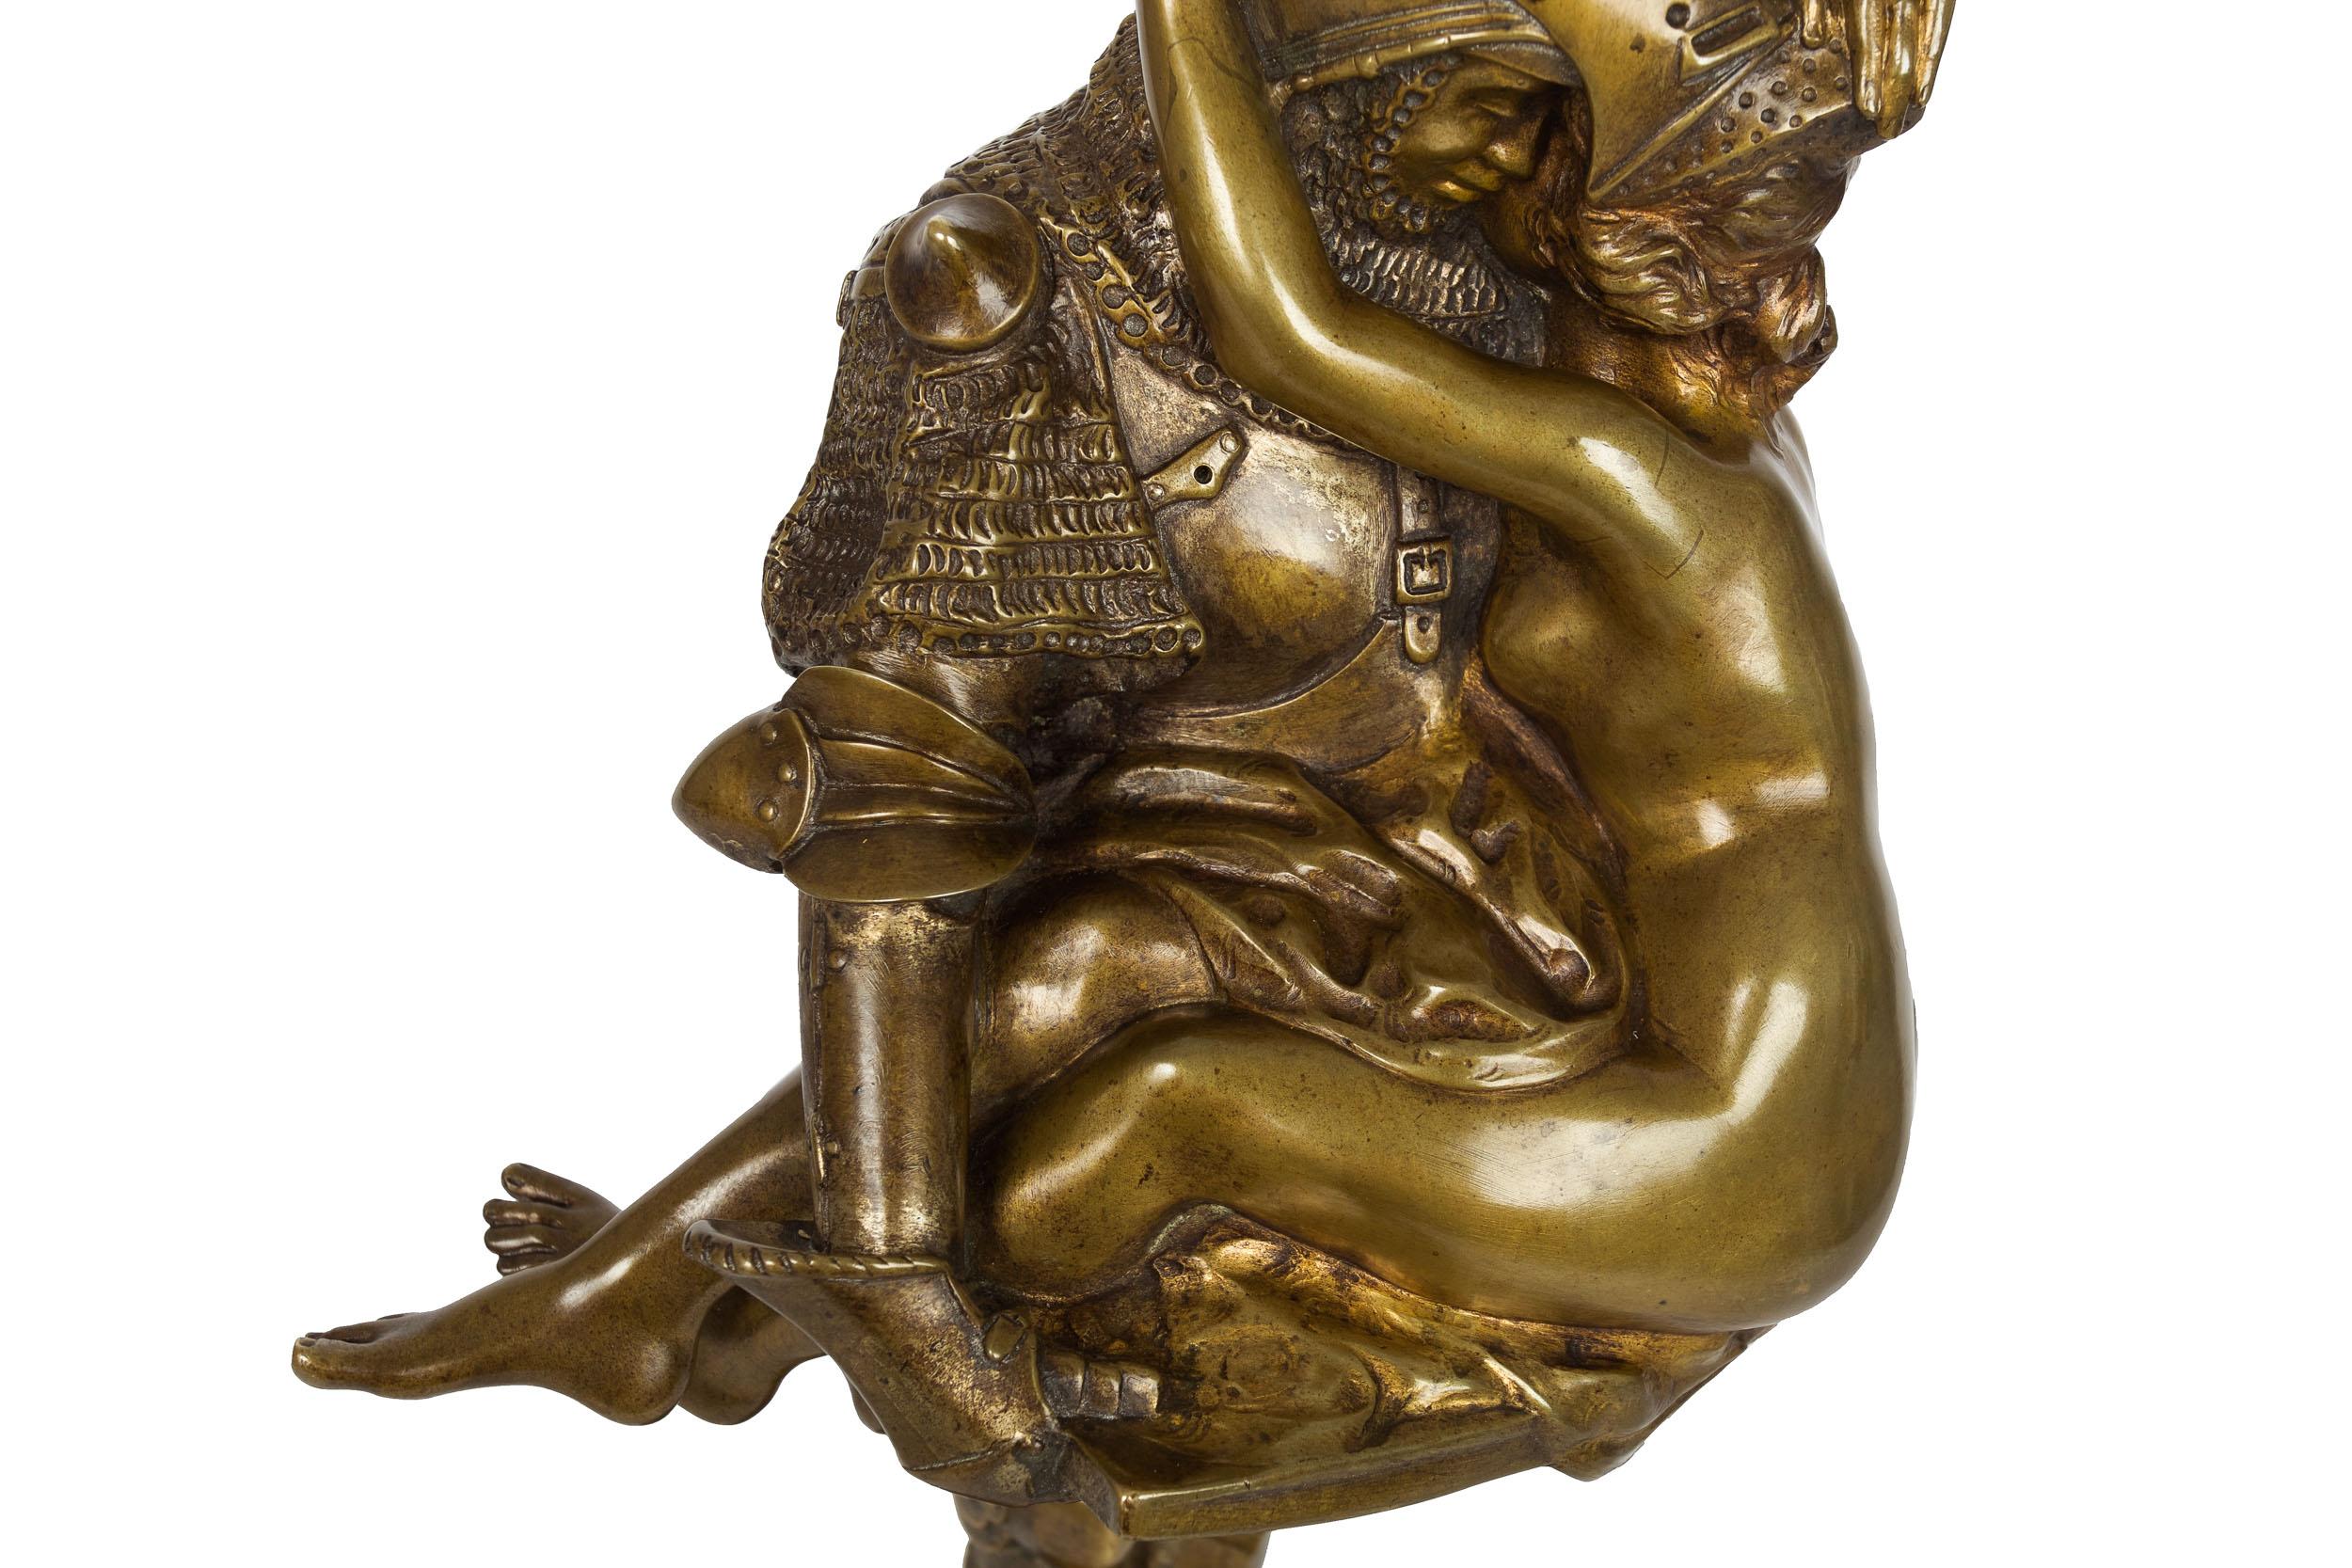 French Antique Art Nouveau Bronze Sculpture of Knight by François A. Clémencin For Sale 3